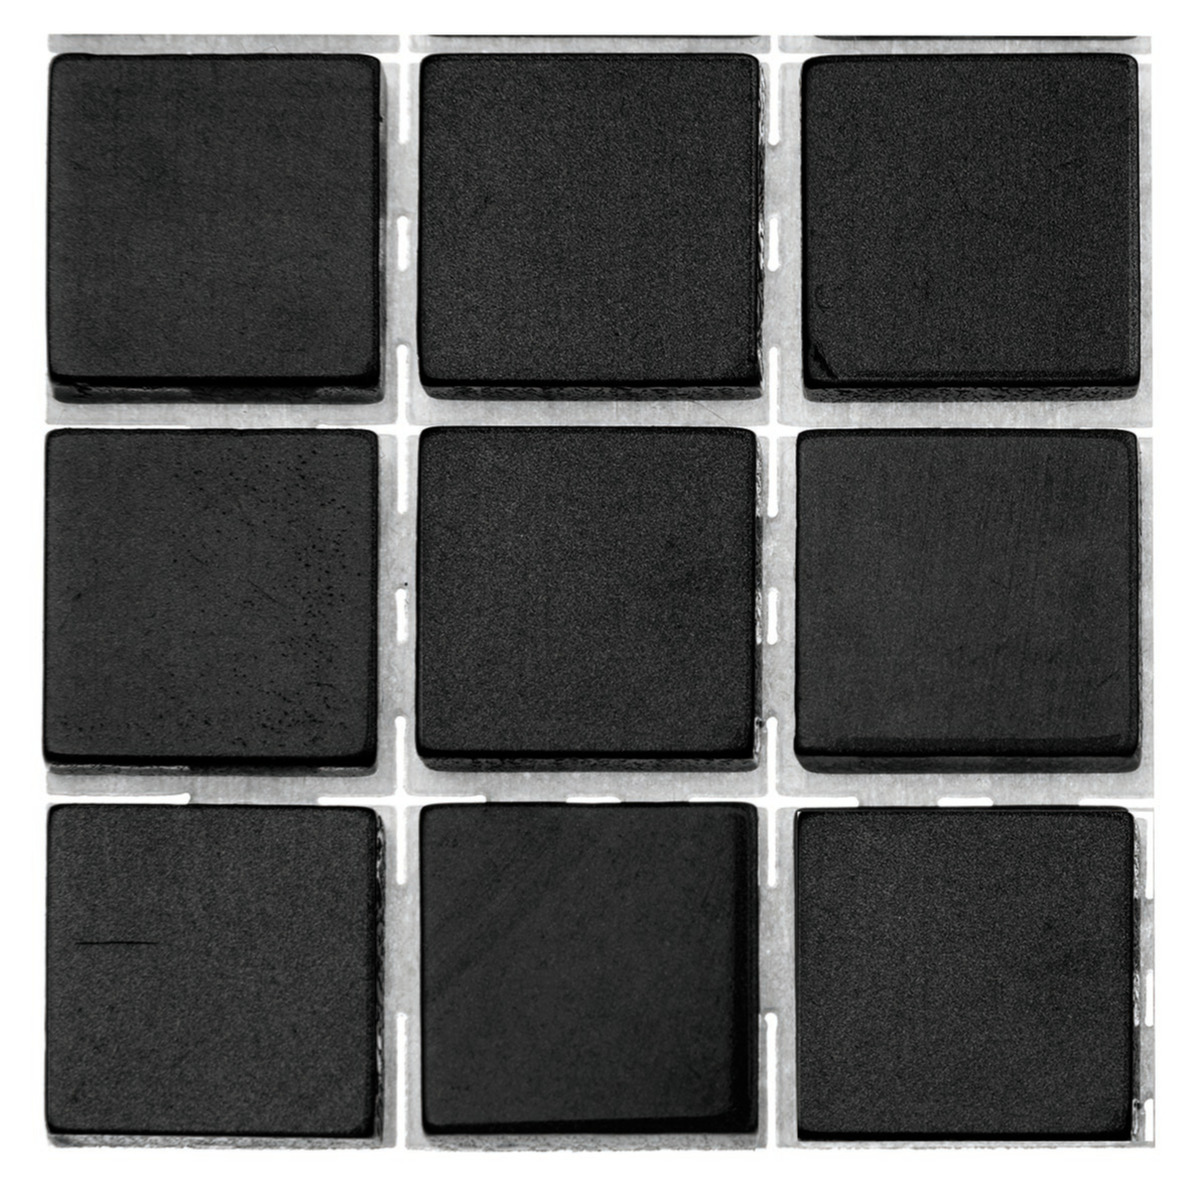 252x stuks mozaieken maken steentjes/tegels kleur zwart met formaat 10 x 10 x 2 mm